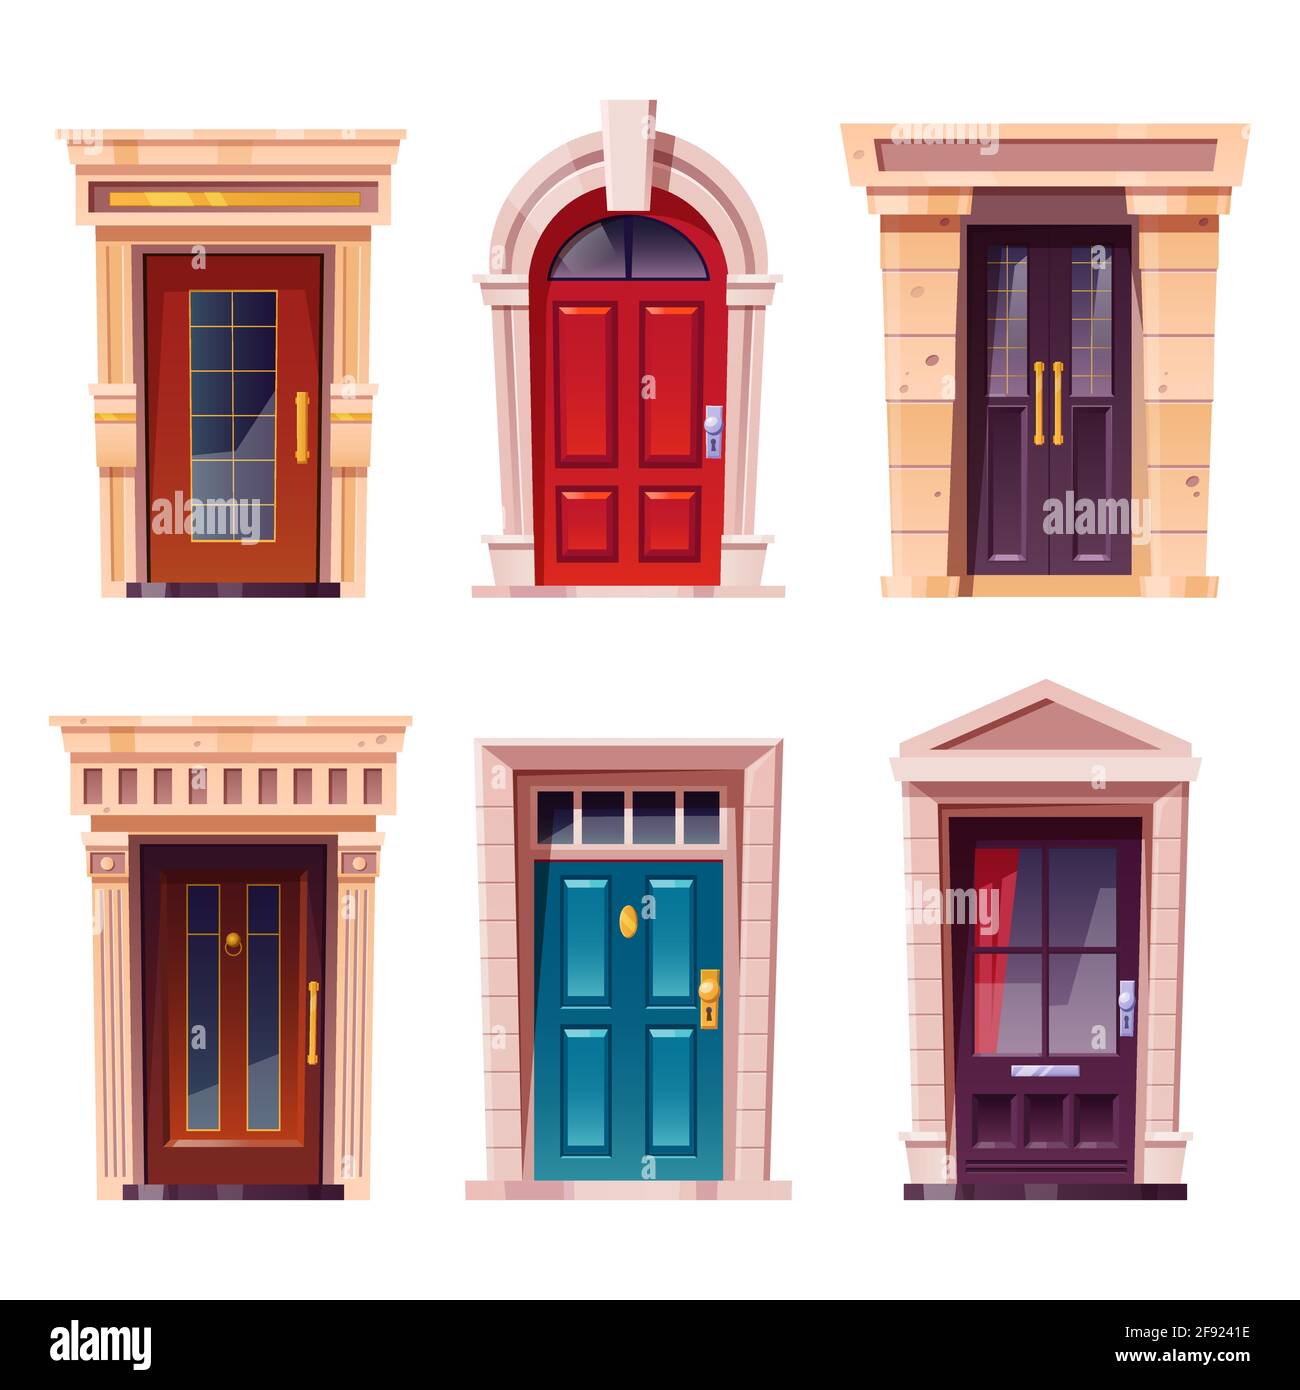 Geschlossene Eingangstüren mit Steinrahmen für die Gebäudefassade. Vektor Cartoon Satz von Haus Eingang, rot, braun und blau Holztüren mit Knöpfen und Fenstern isoliert auf weißem Hintergrund Stock Vektor